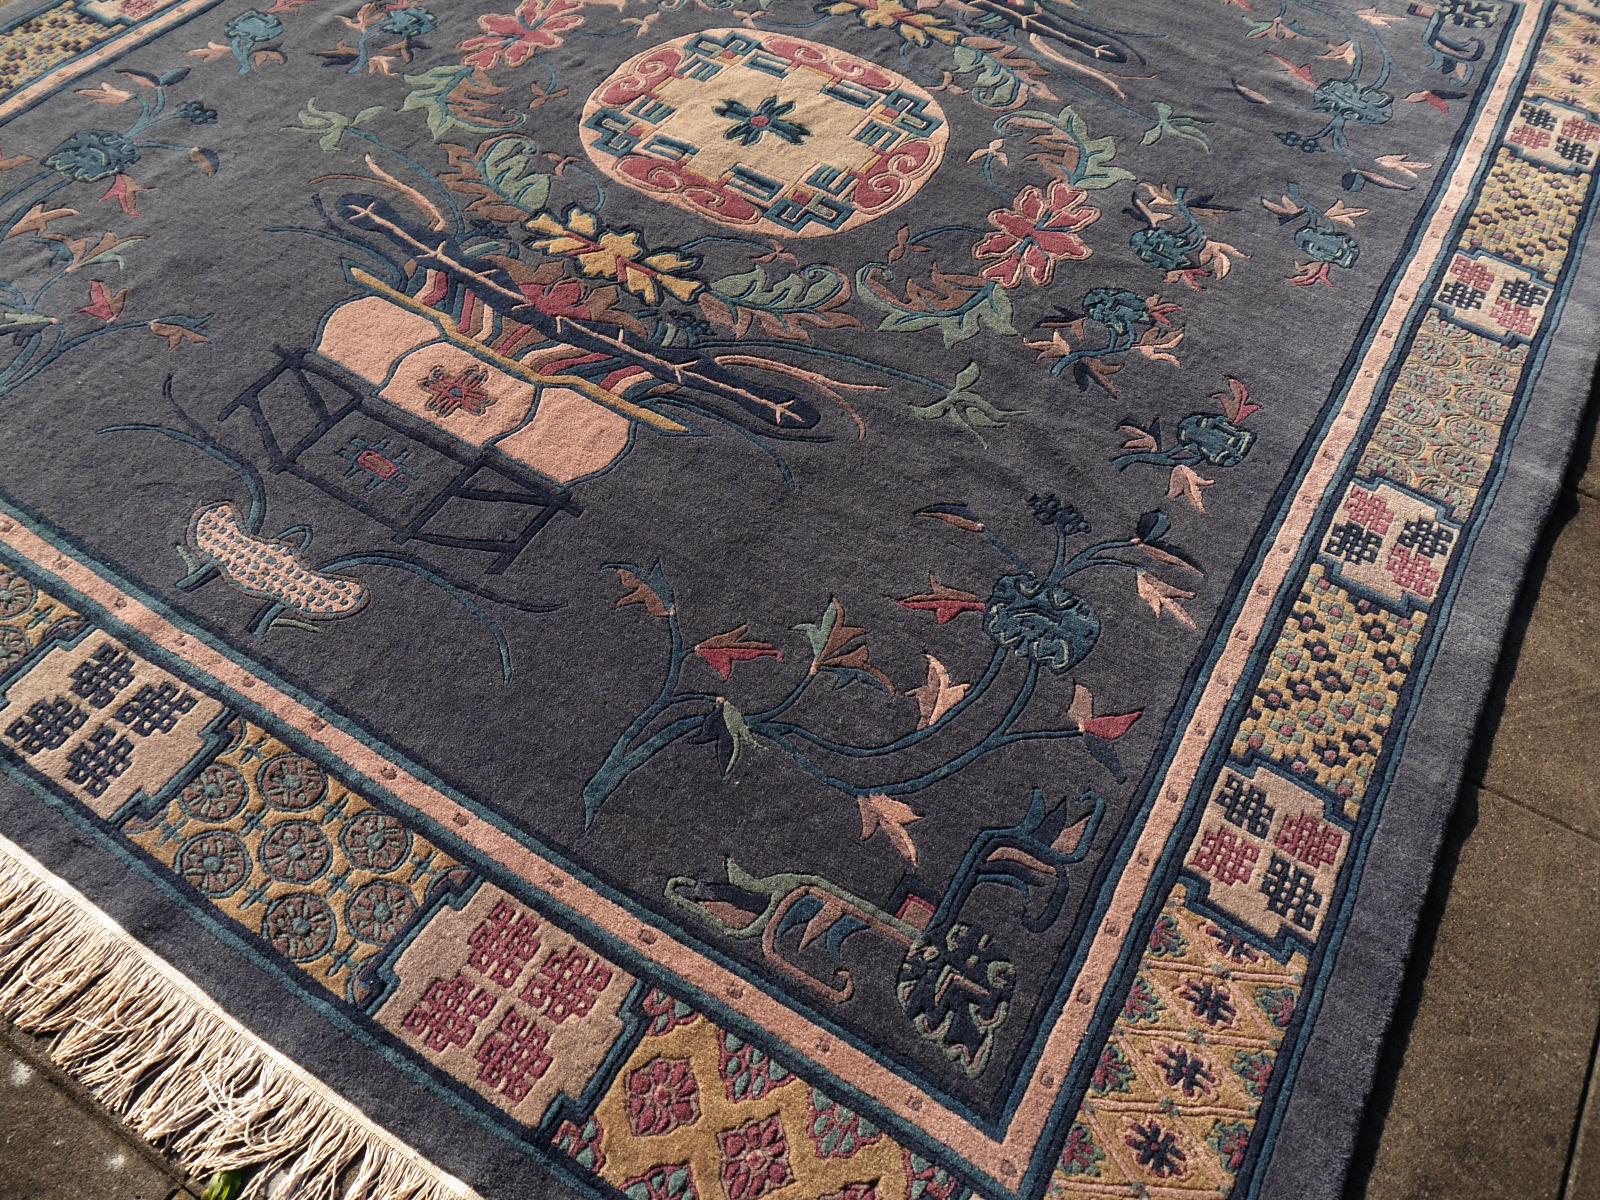 Dieser alte traditionelle tibetische Teppich wurde aus feinster Wolle handgeknüpft. Das Design zeigt Medaillon und Glücksbringer-Symbole:: die in Tibet und China üblich sind. Der Stil erinnert auch an chinesische Khotan-Teppiche. Der Flor besteht